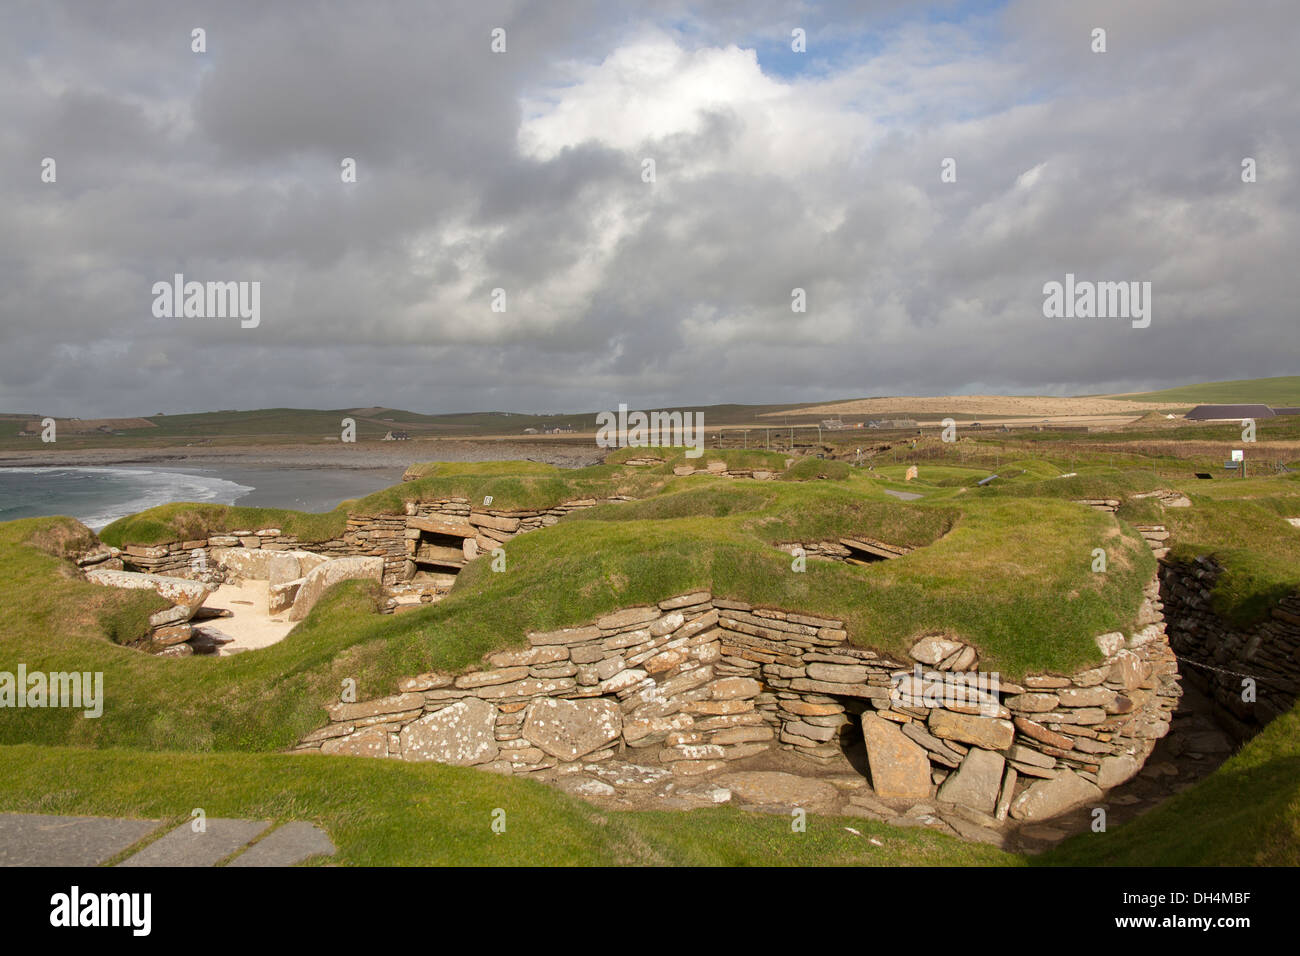 Isole di Orkney, Scozia. L'insediamento neolitico a Skara Brae, con la baia di Skaill in background. Foto Stock